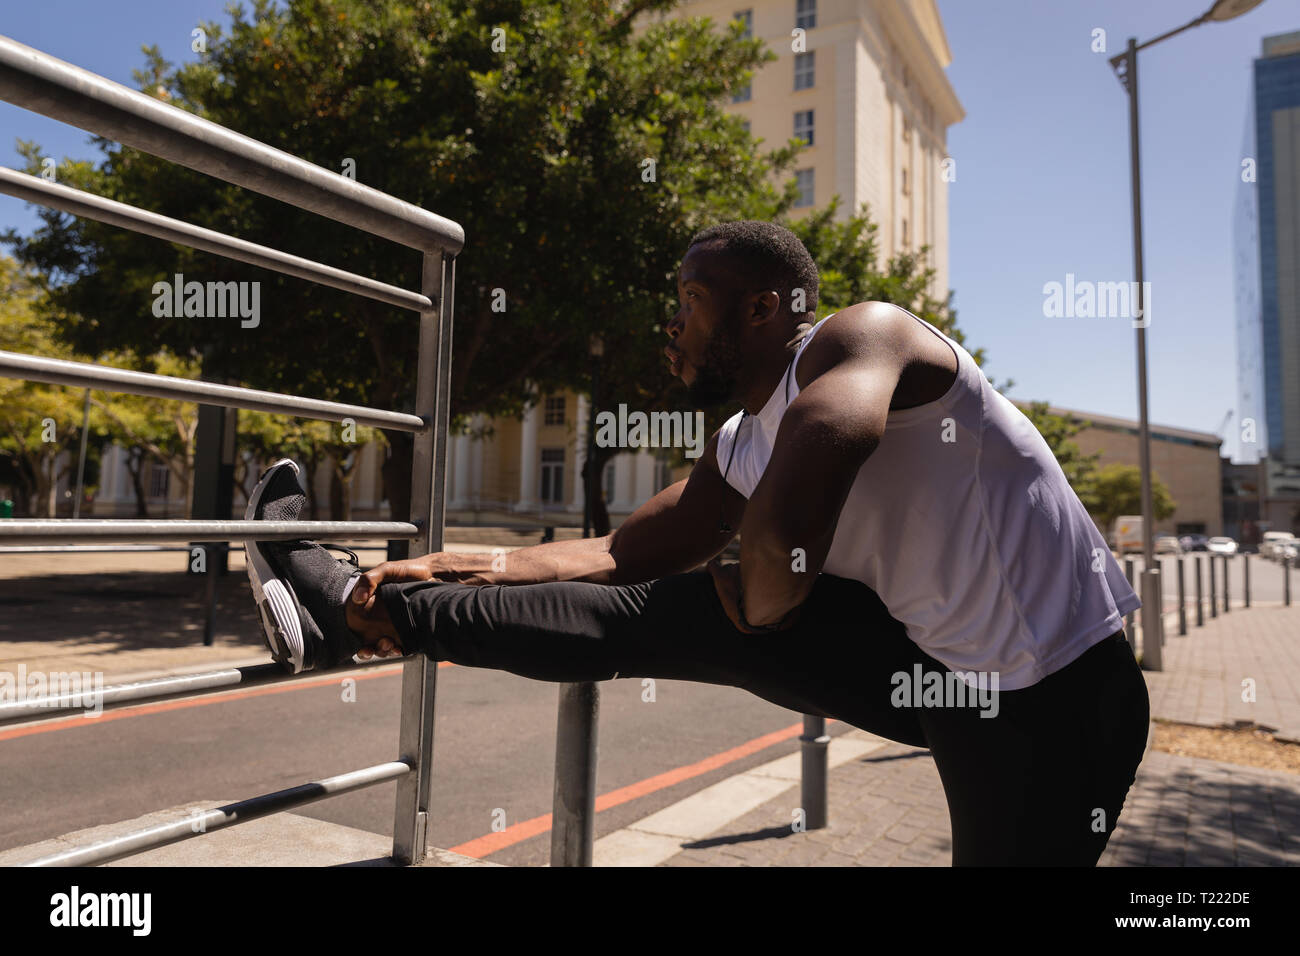 Mann zu tun Stretching übung gegen Geländer Stockfoto